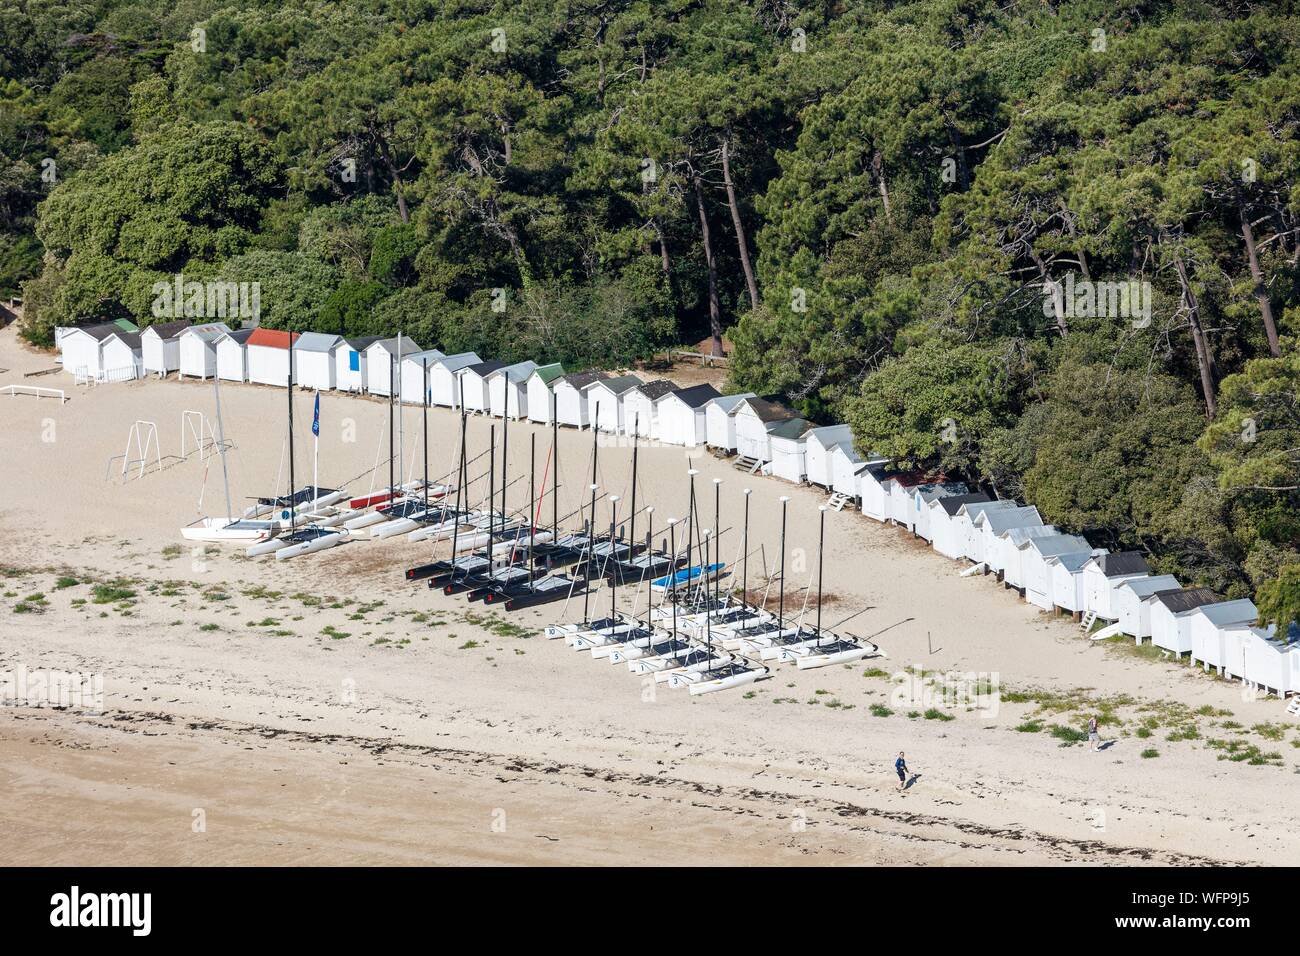 France, Vendée, Noirmoutier en l'Ile, cabines de plage et les catamarans sur Les Sableaux plage (vue aérienne) Banque D'Images